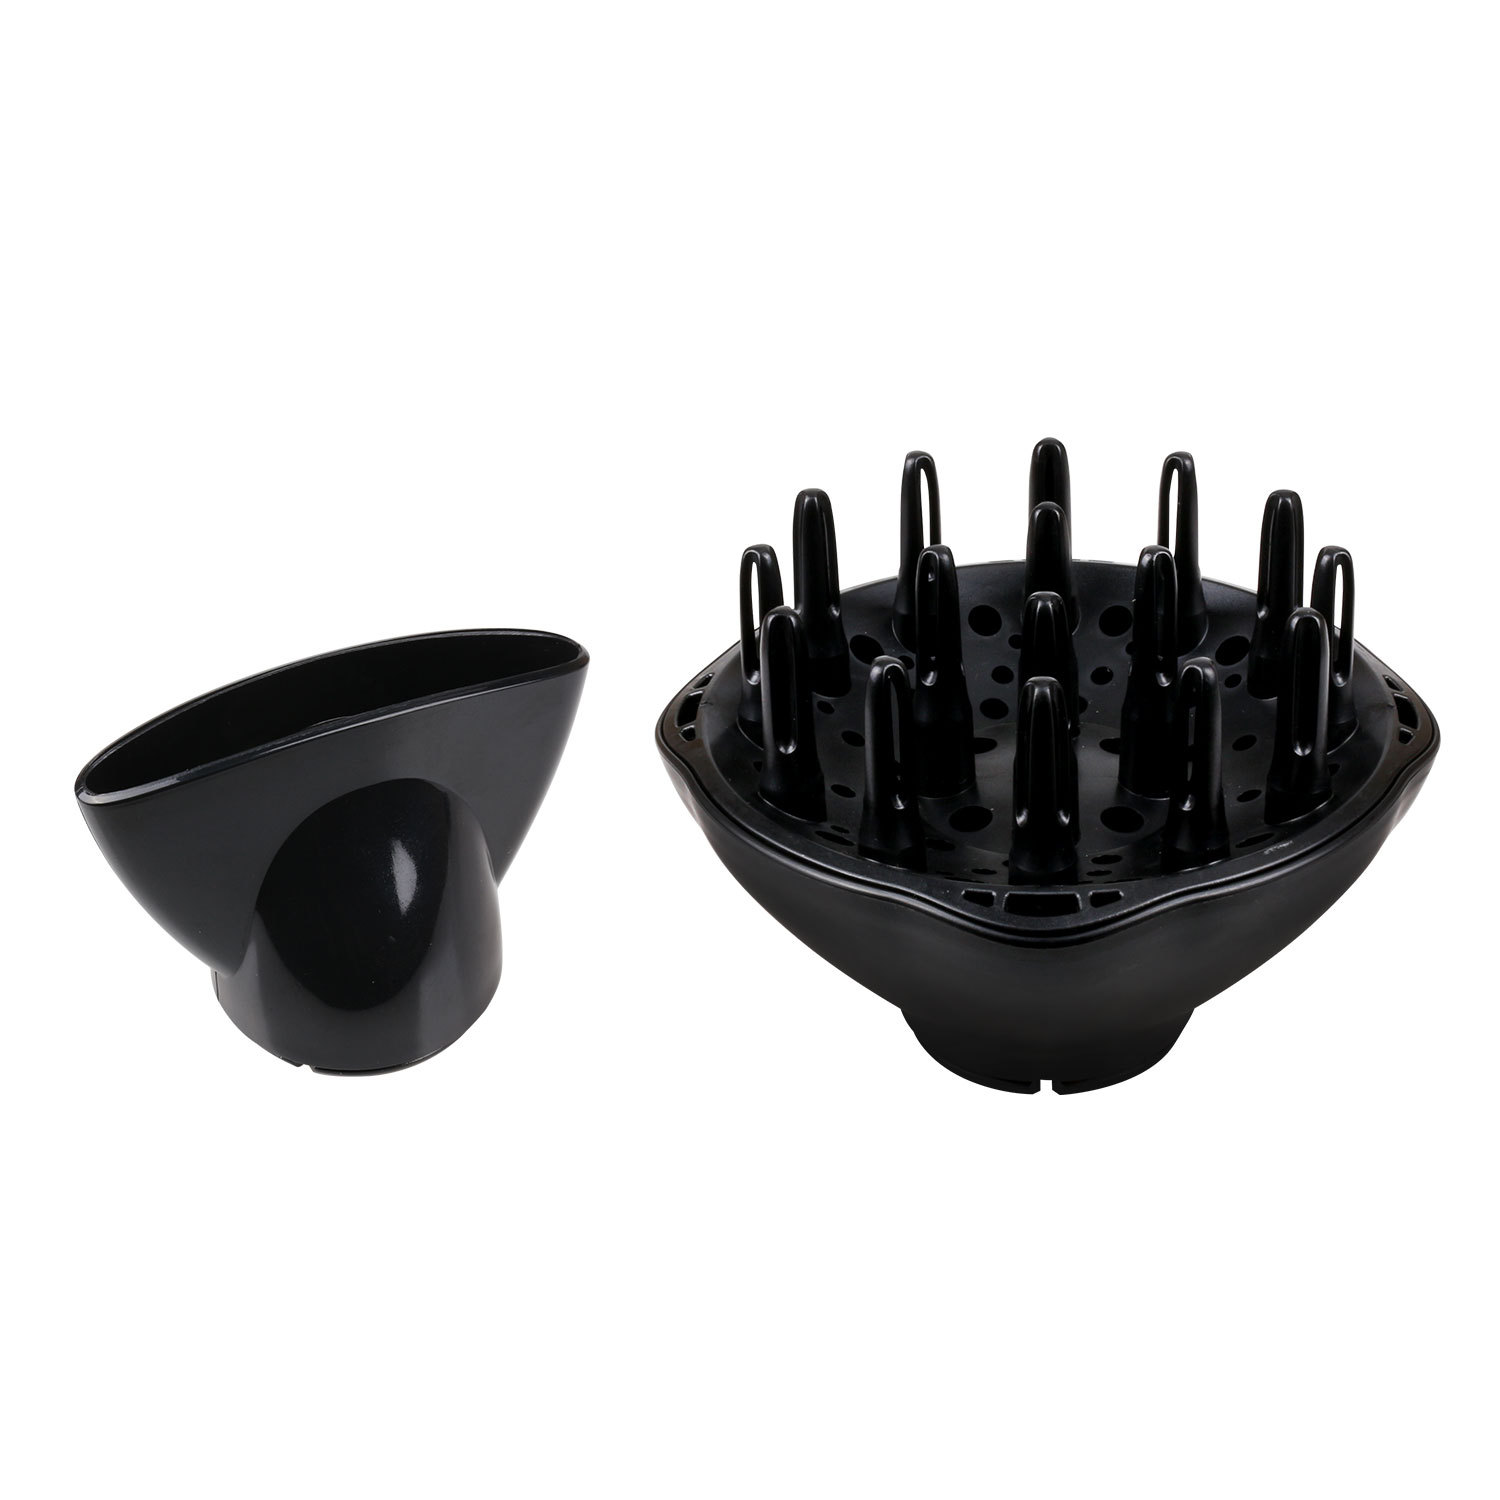 Aigostar  - Sèche-cheveux professionnel de couleur noir et argent avec diffuseur et accessoires. 2200 W. Design exclusif d'Aigostar.(1)